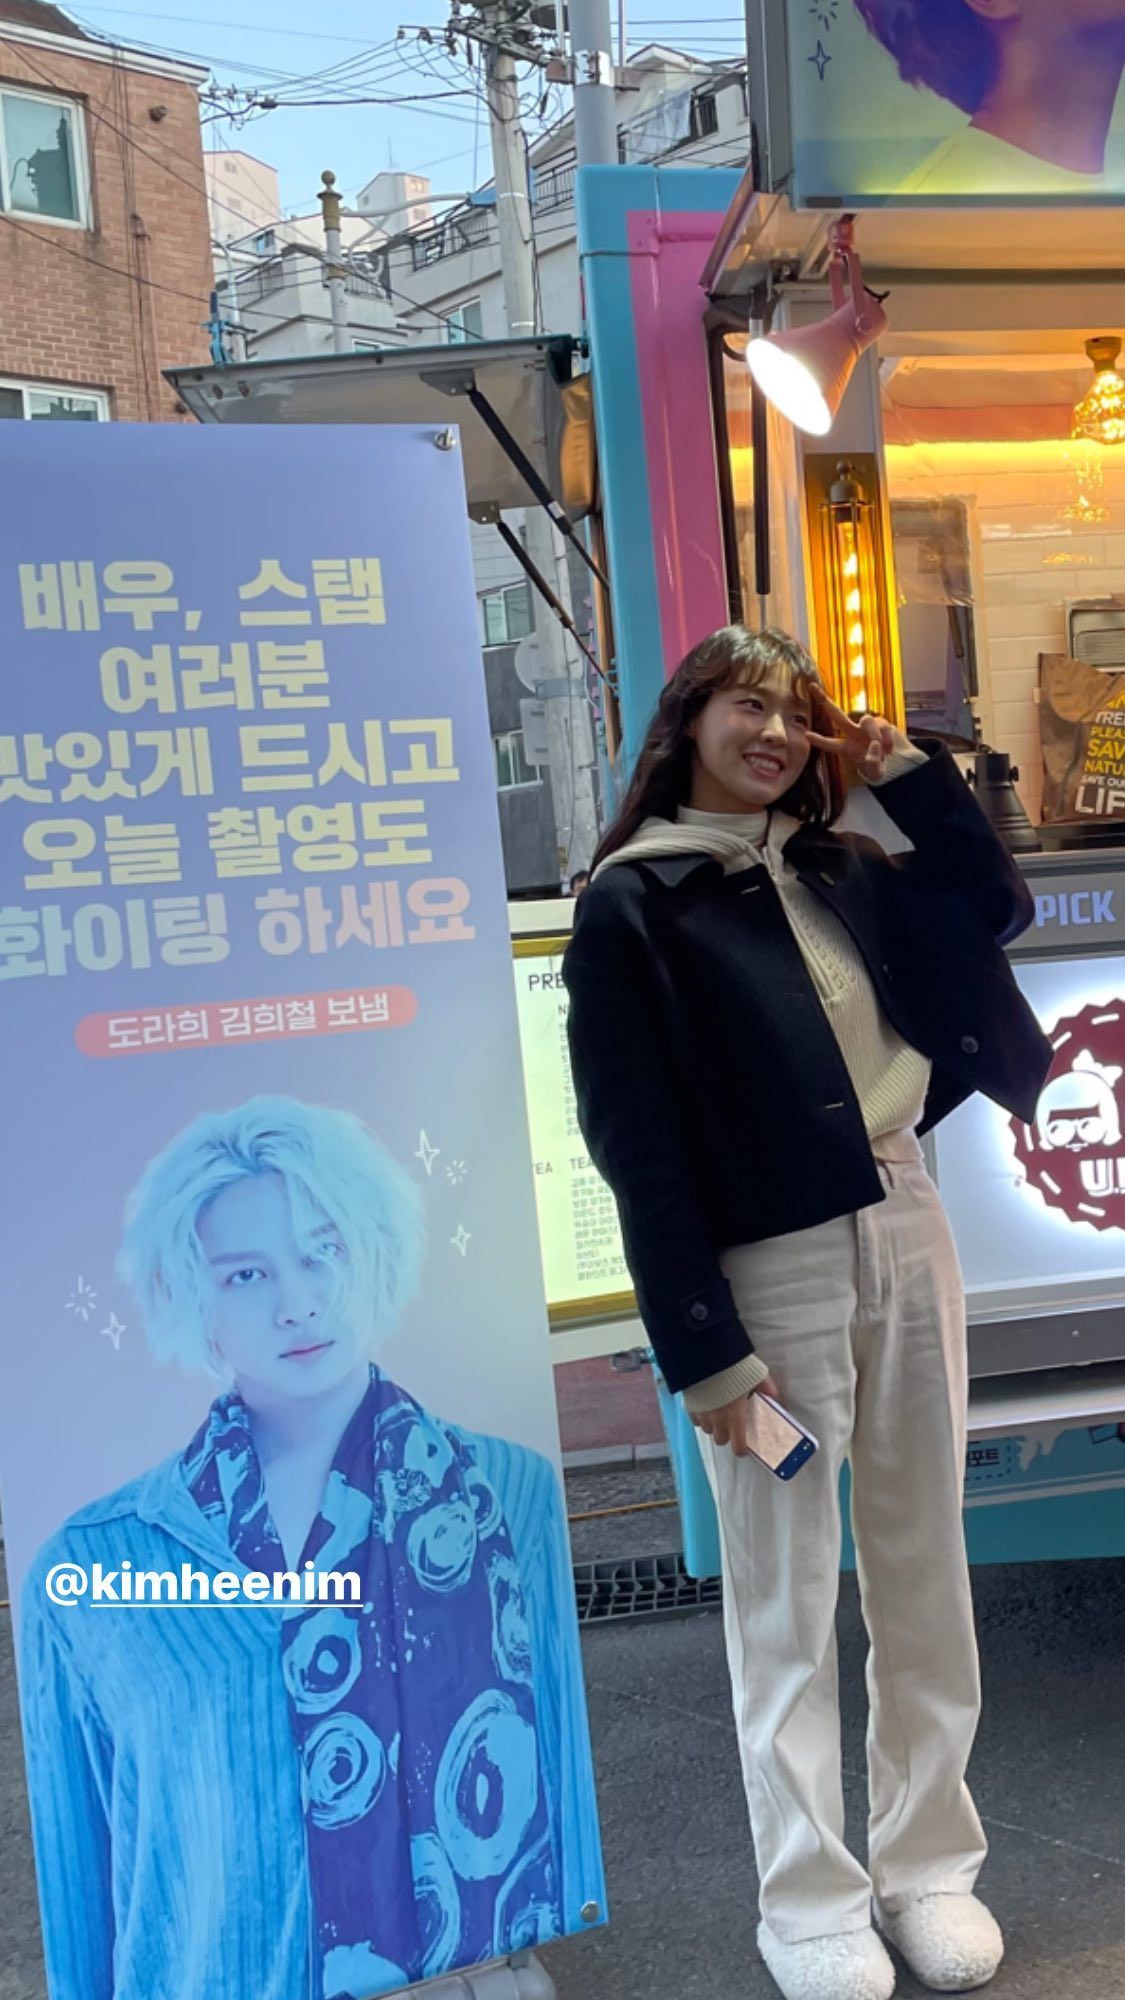 Seolhyun AOA mengungkapkan di Instagram Stories bahwa Kim Heechul telah mengirim truk kopi ke lokasi syuting drama tvN